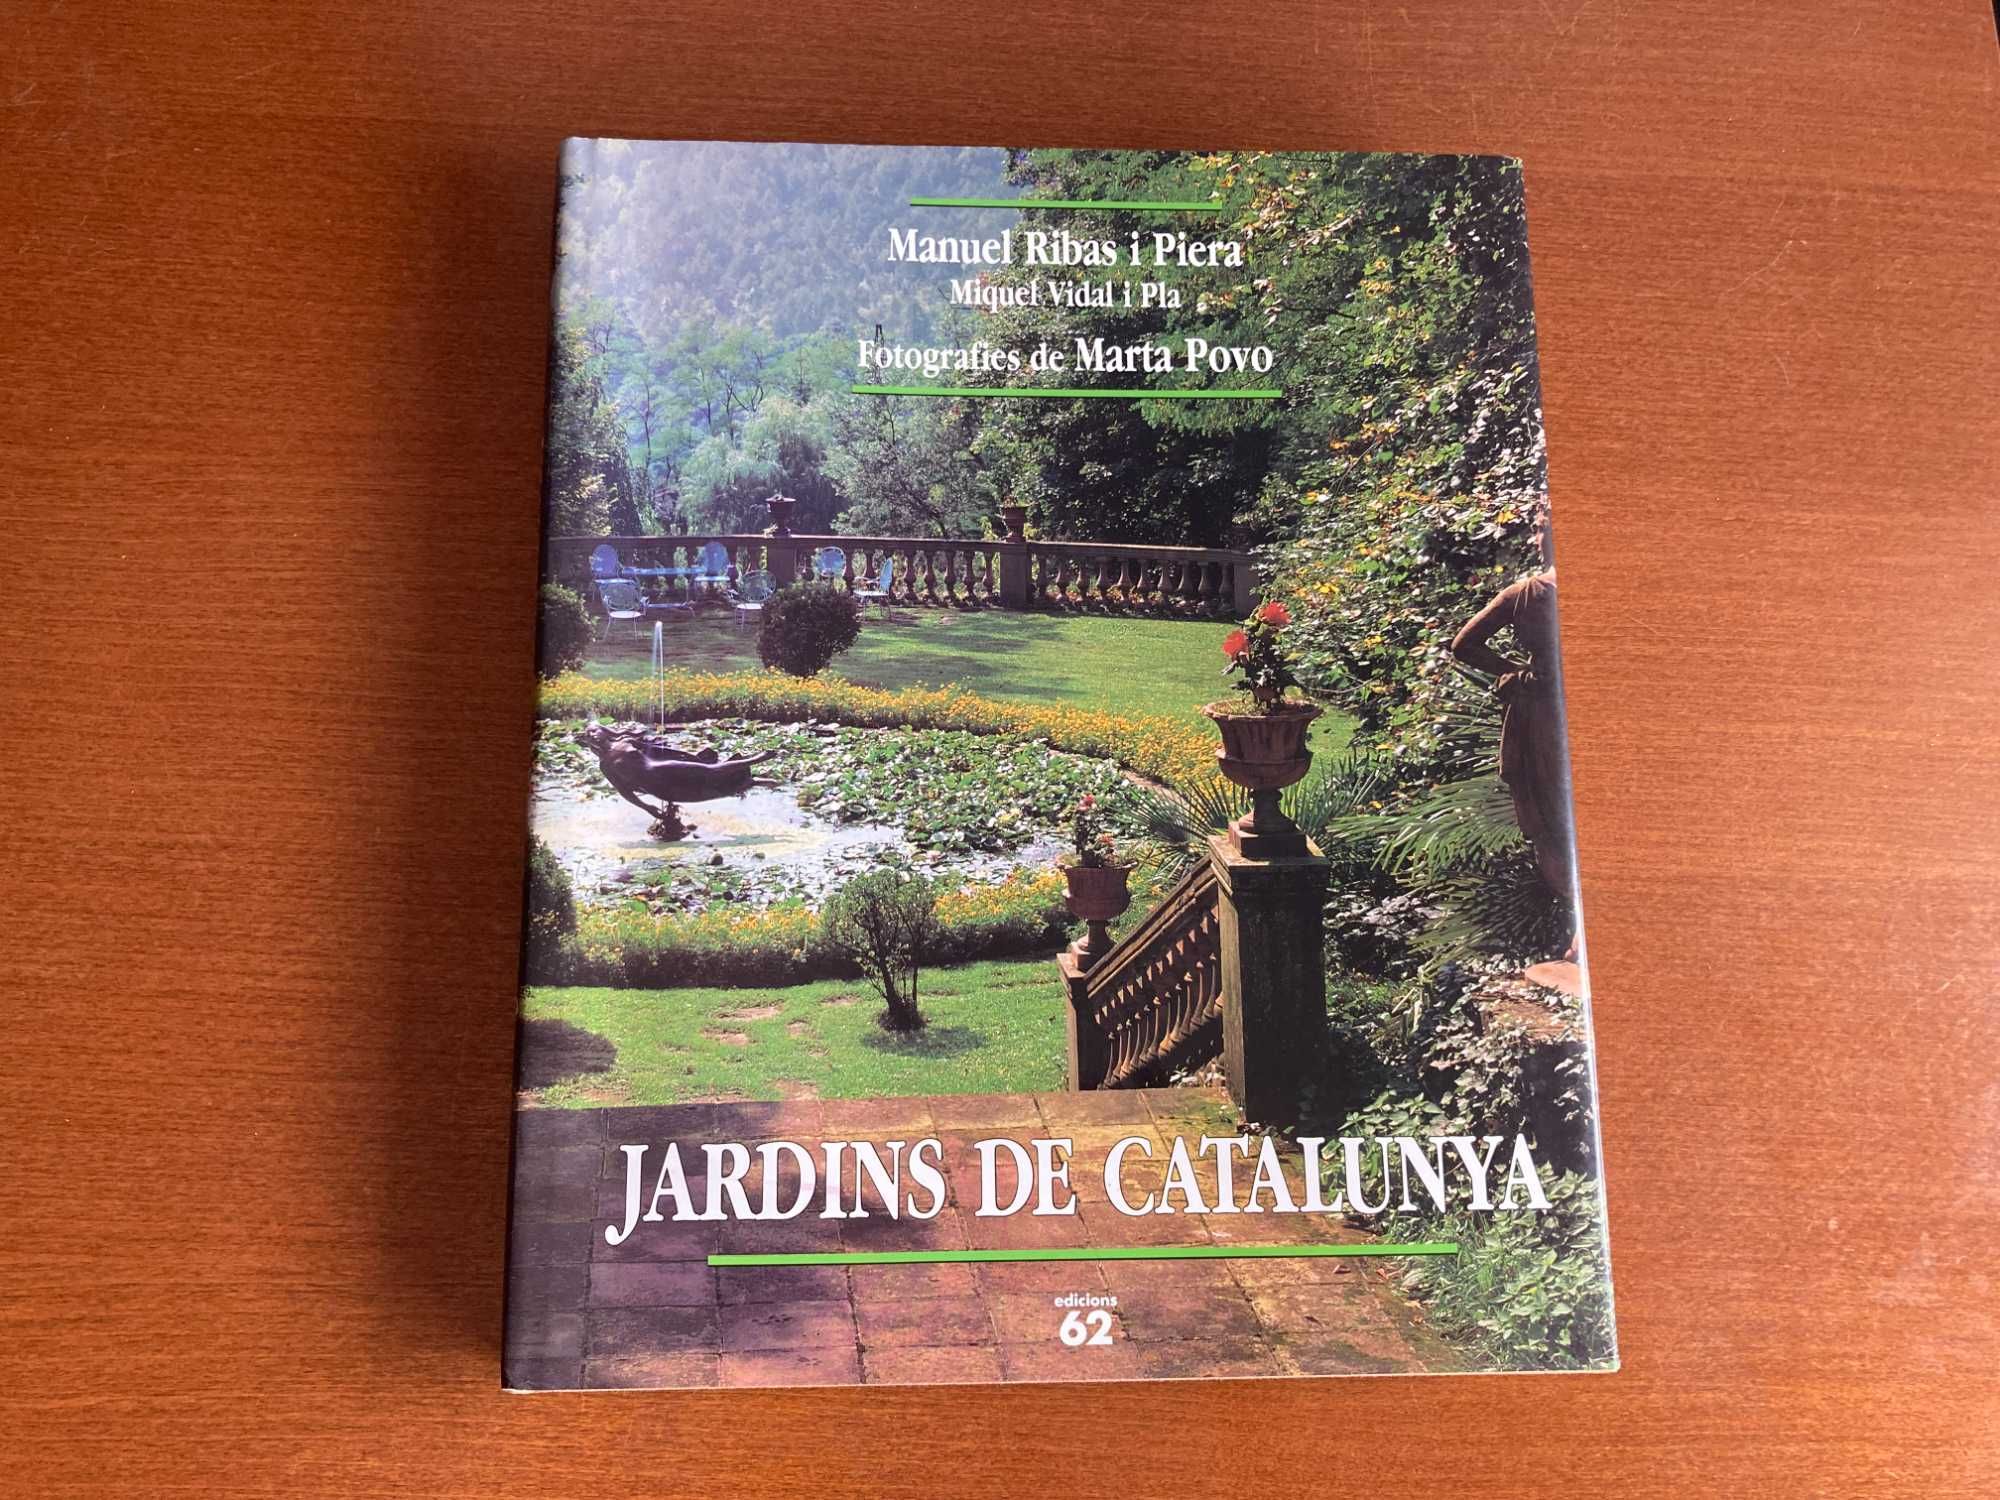 Jardins de Catalunya de Manuel Ribas i Piera